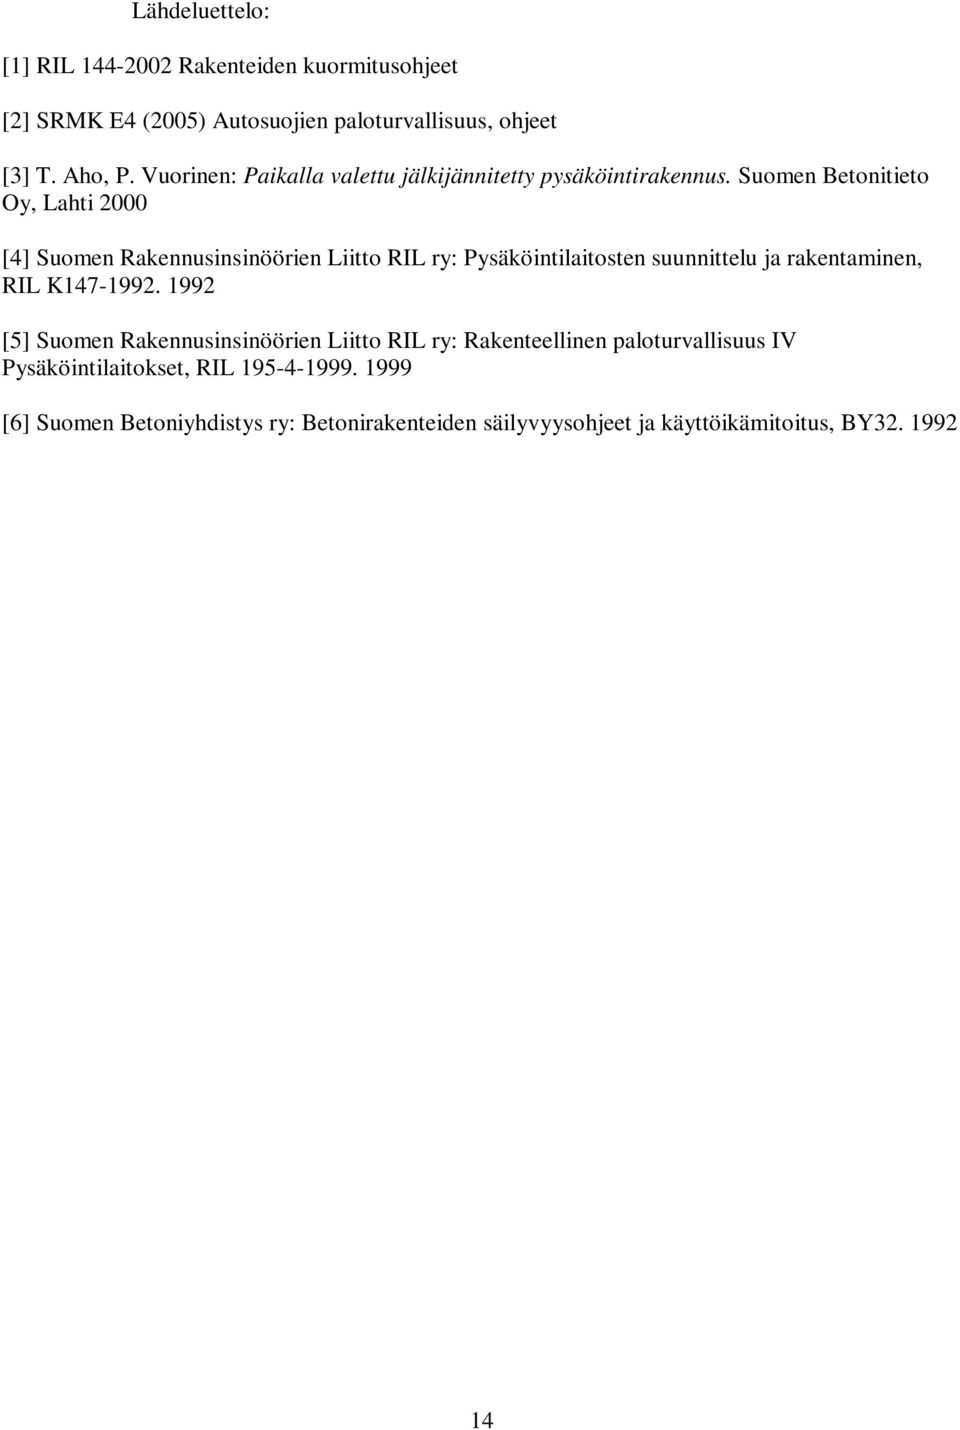 Suomen Betonitieto Oy, Lahti 2000 [4] Suomen Rakennusinsinöörien Liitto RIL ry: Pysäköintilaitosten suunnittelu ja rakentaminen, RIL